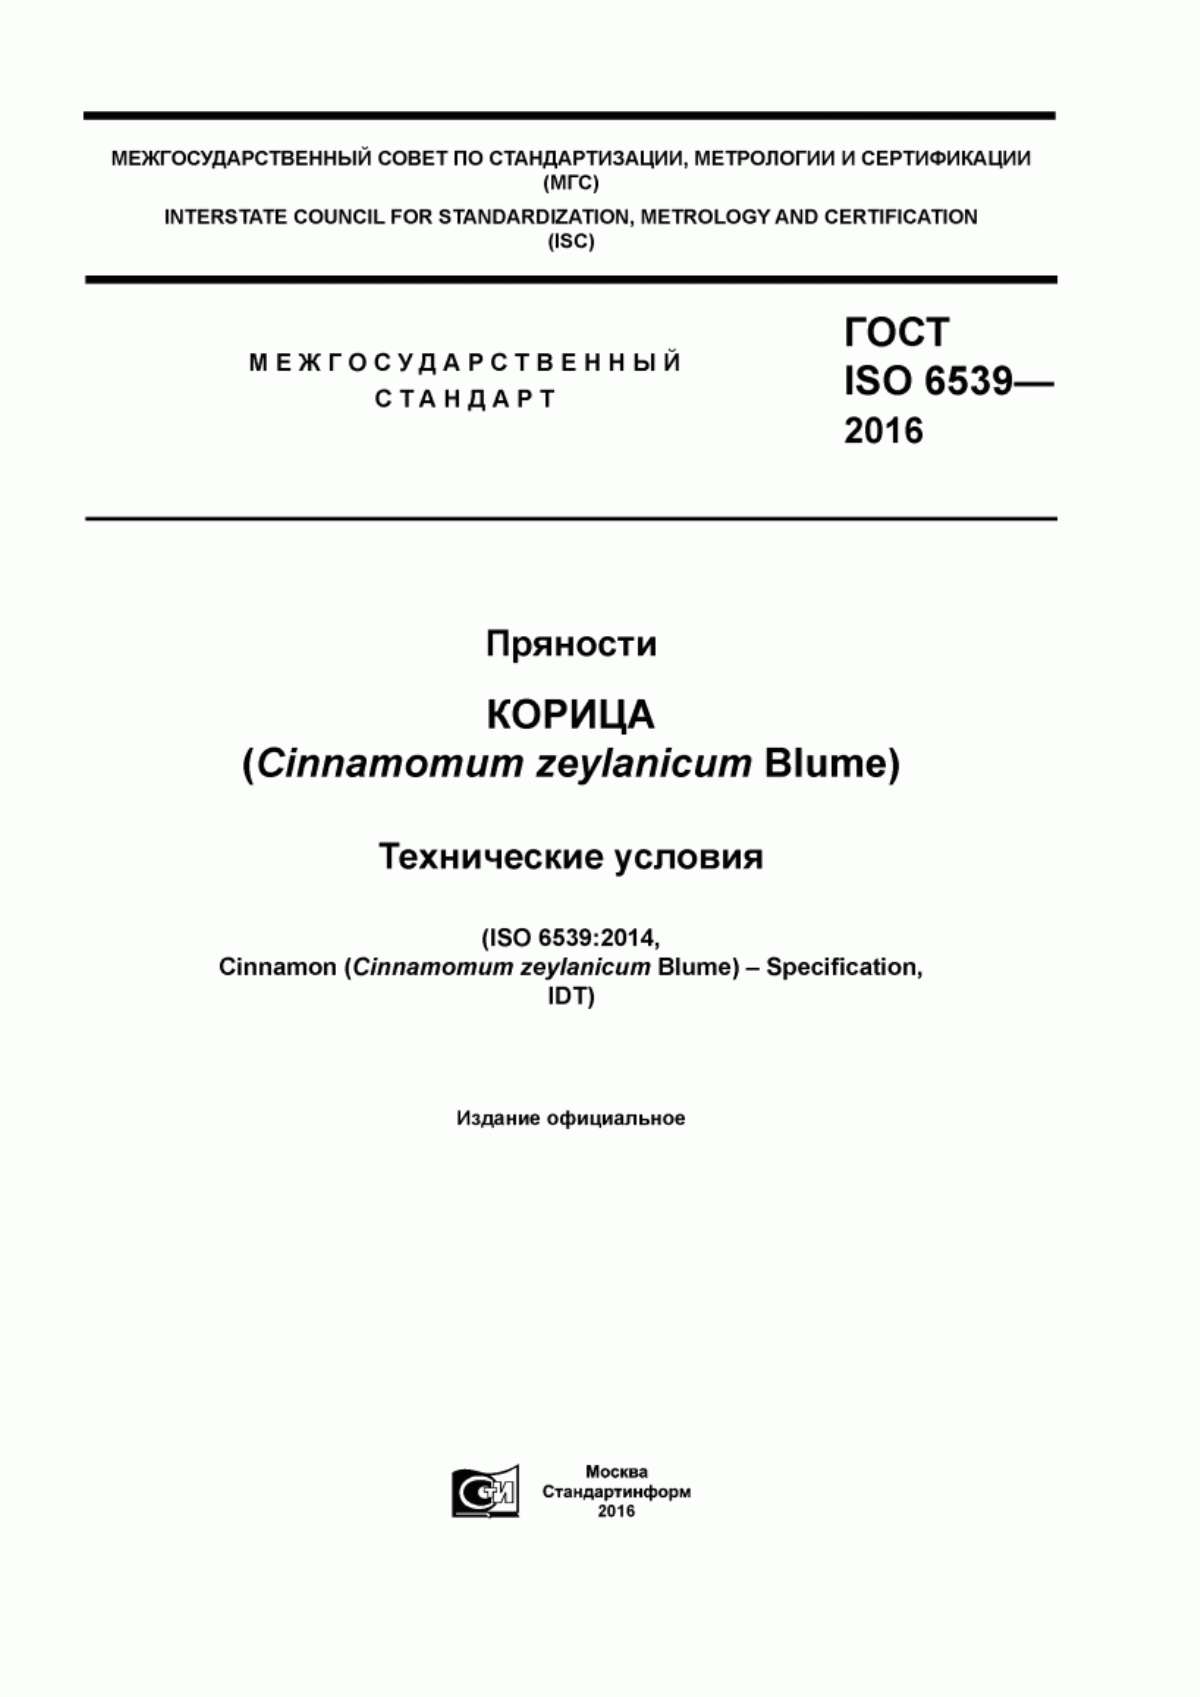 ГОСТ ISO 6539-2016 Пряности. Корица (Cinnamomum zeylanicum Blume). Технические условия